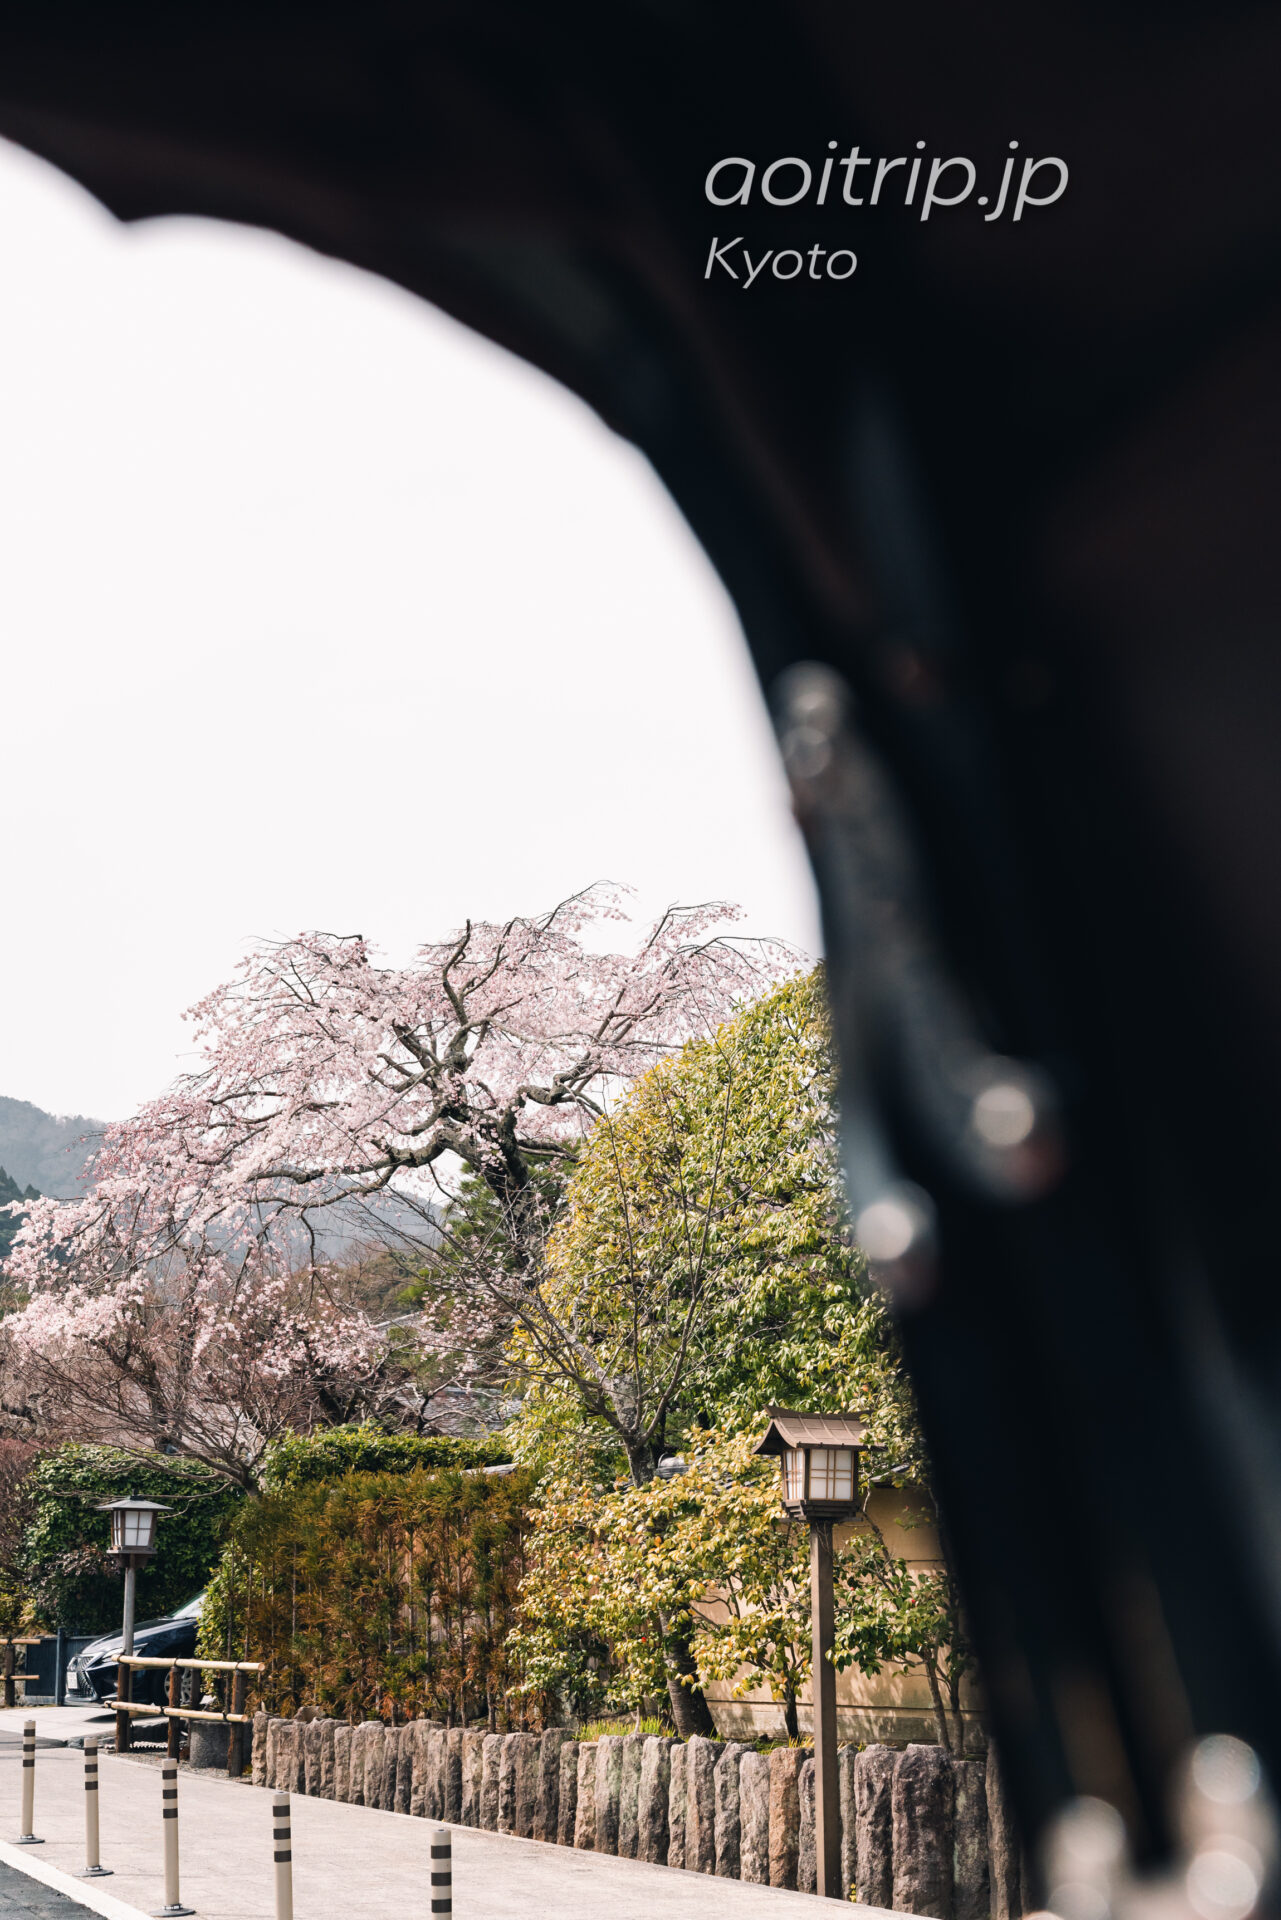 翠嵐 ラグジュアリーコレクションホテル 京都 観光人力車えびす屋の送迎時に見た桜